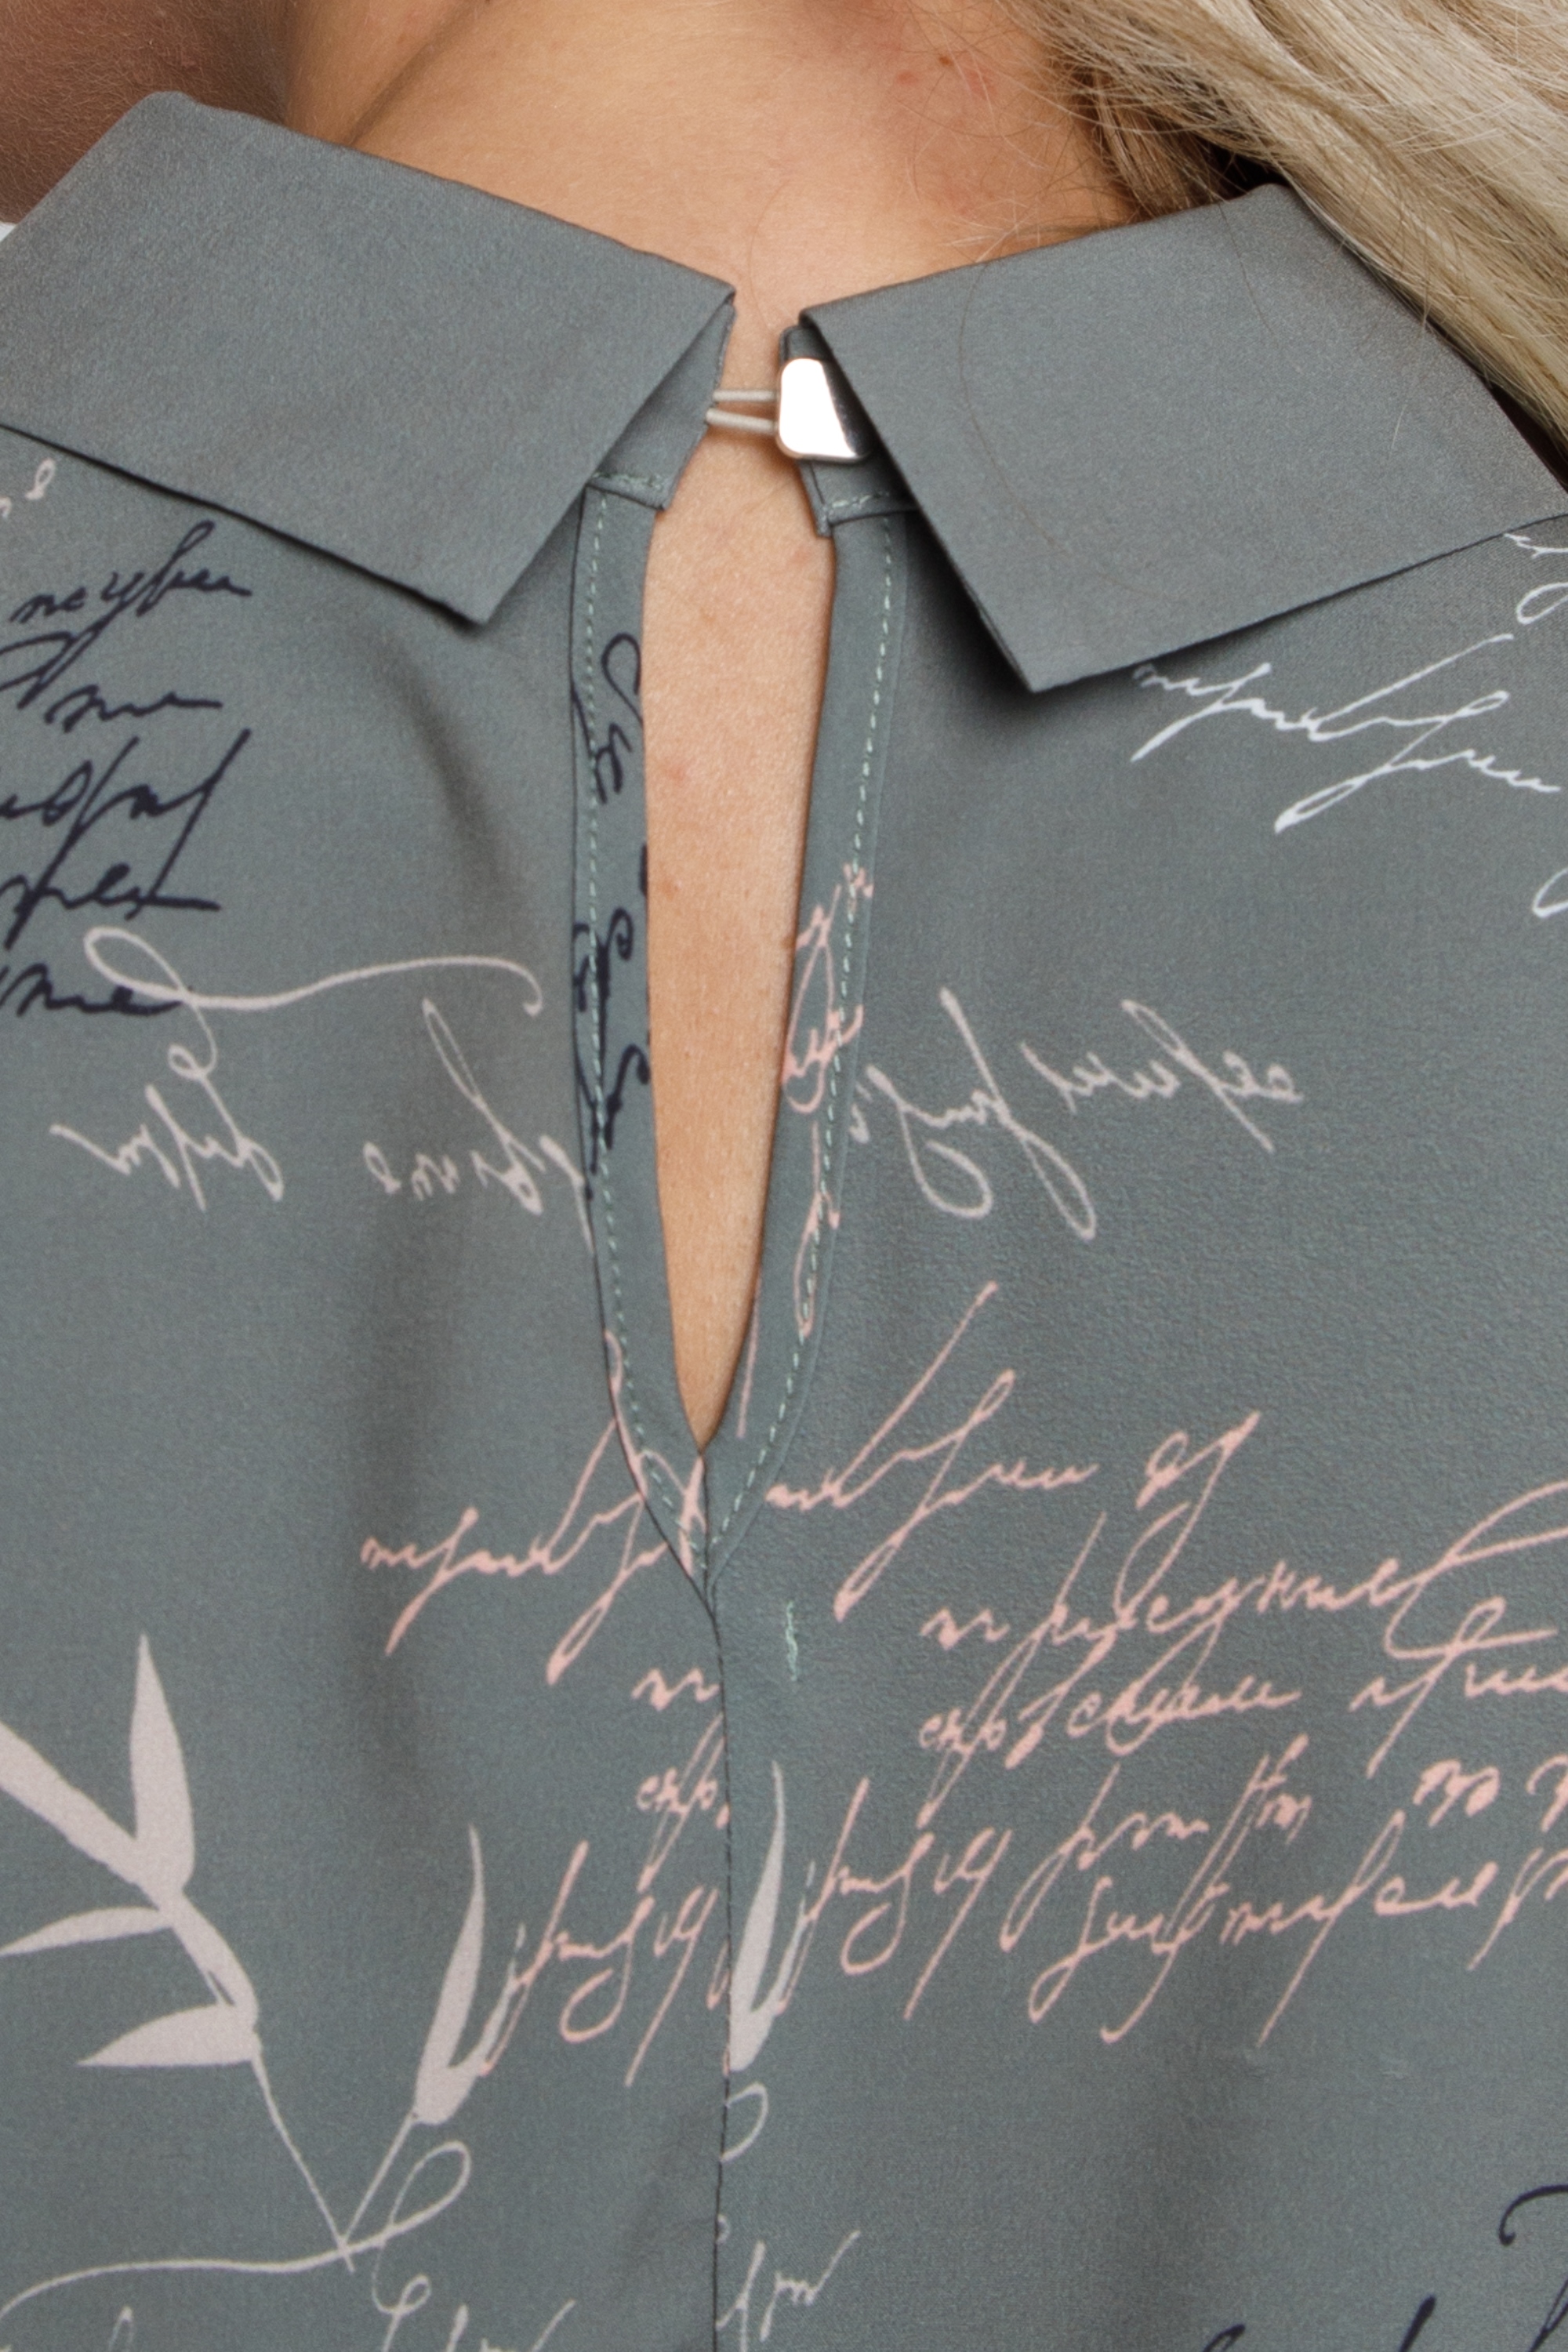 Блуза прямого силуэта с рукавами летучая мышь. 0030-01-27-47-101